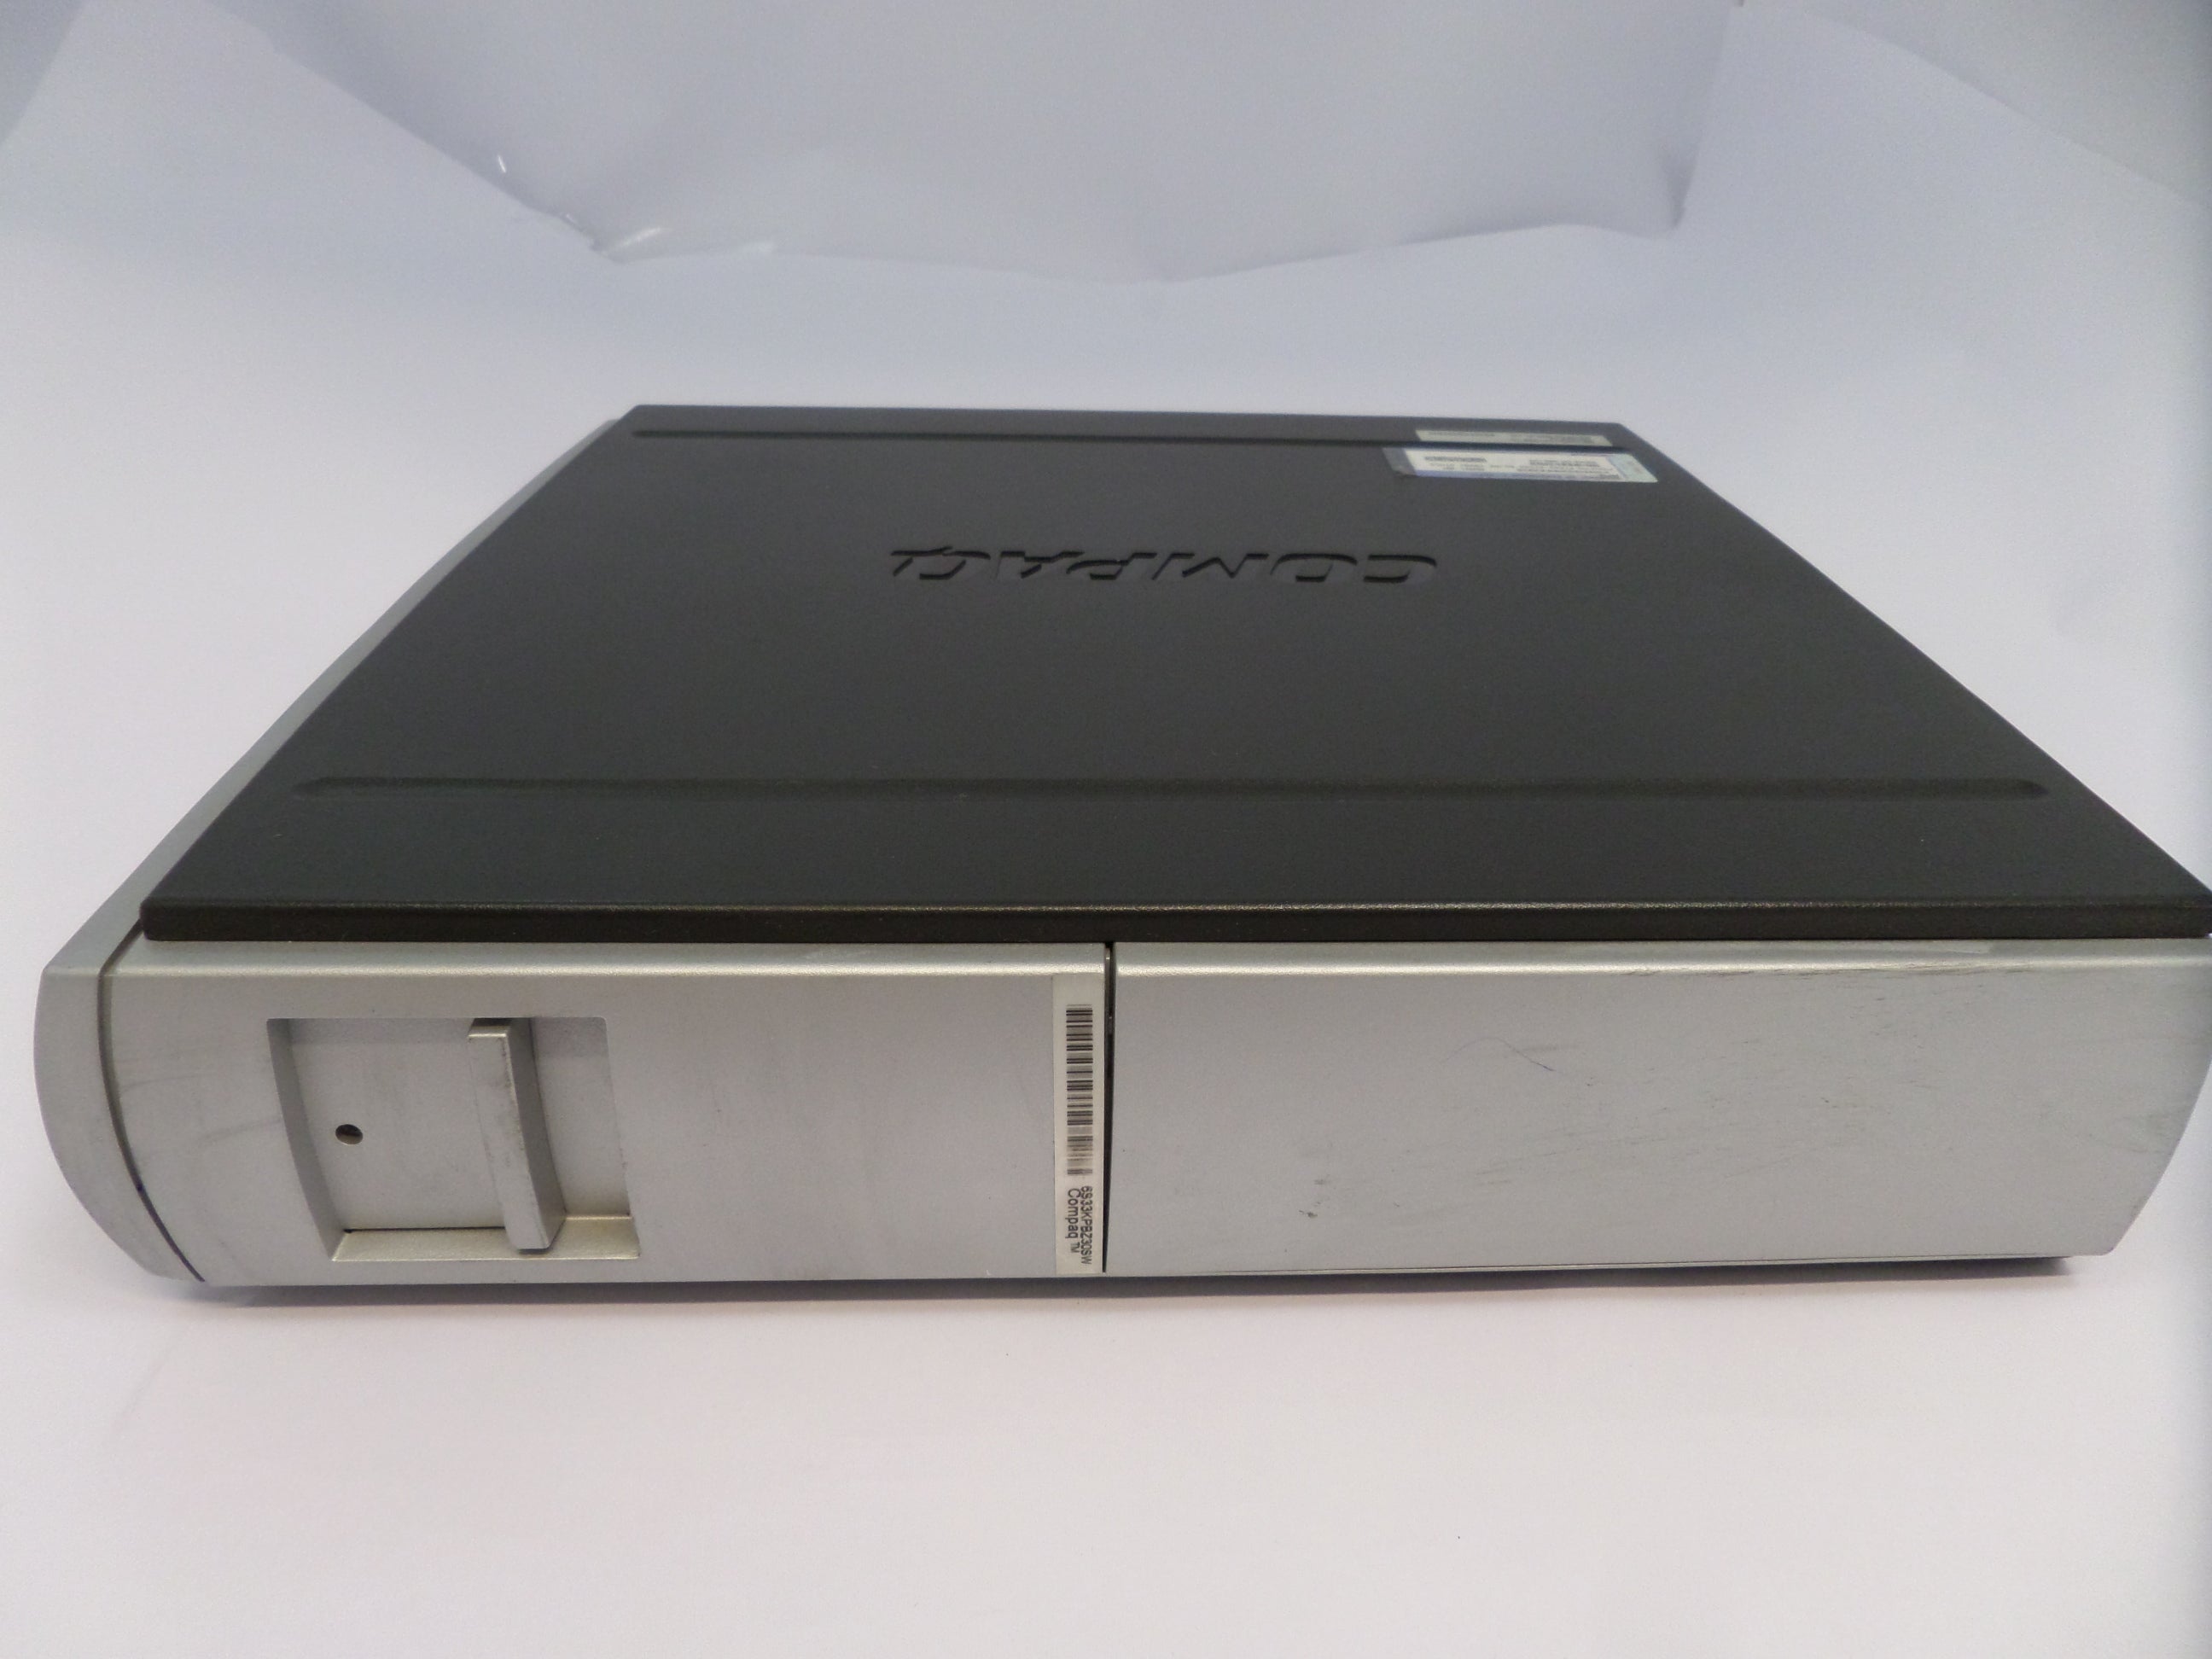 PR25944_D51U/P2A/40/K/256 UK_Compaq EVO D510 USDT Ultra Small Desktop - Image7